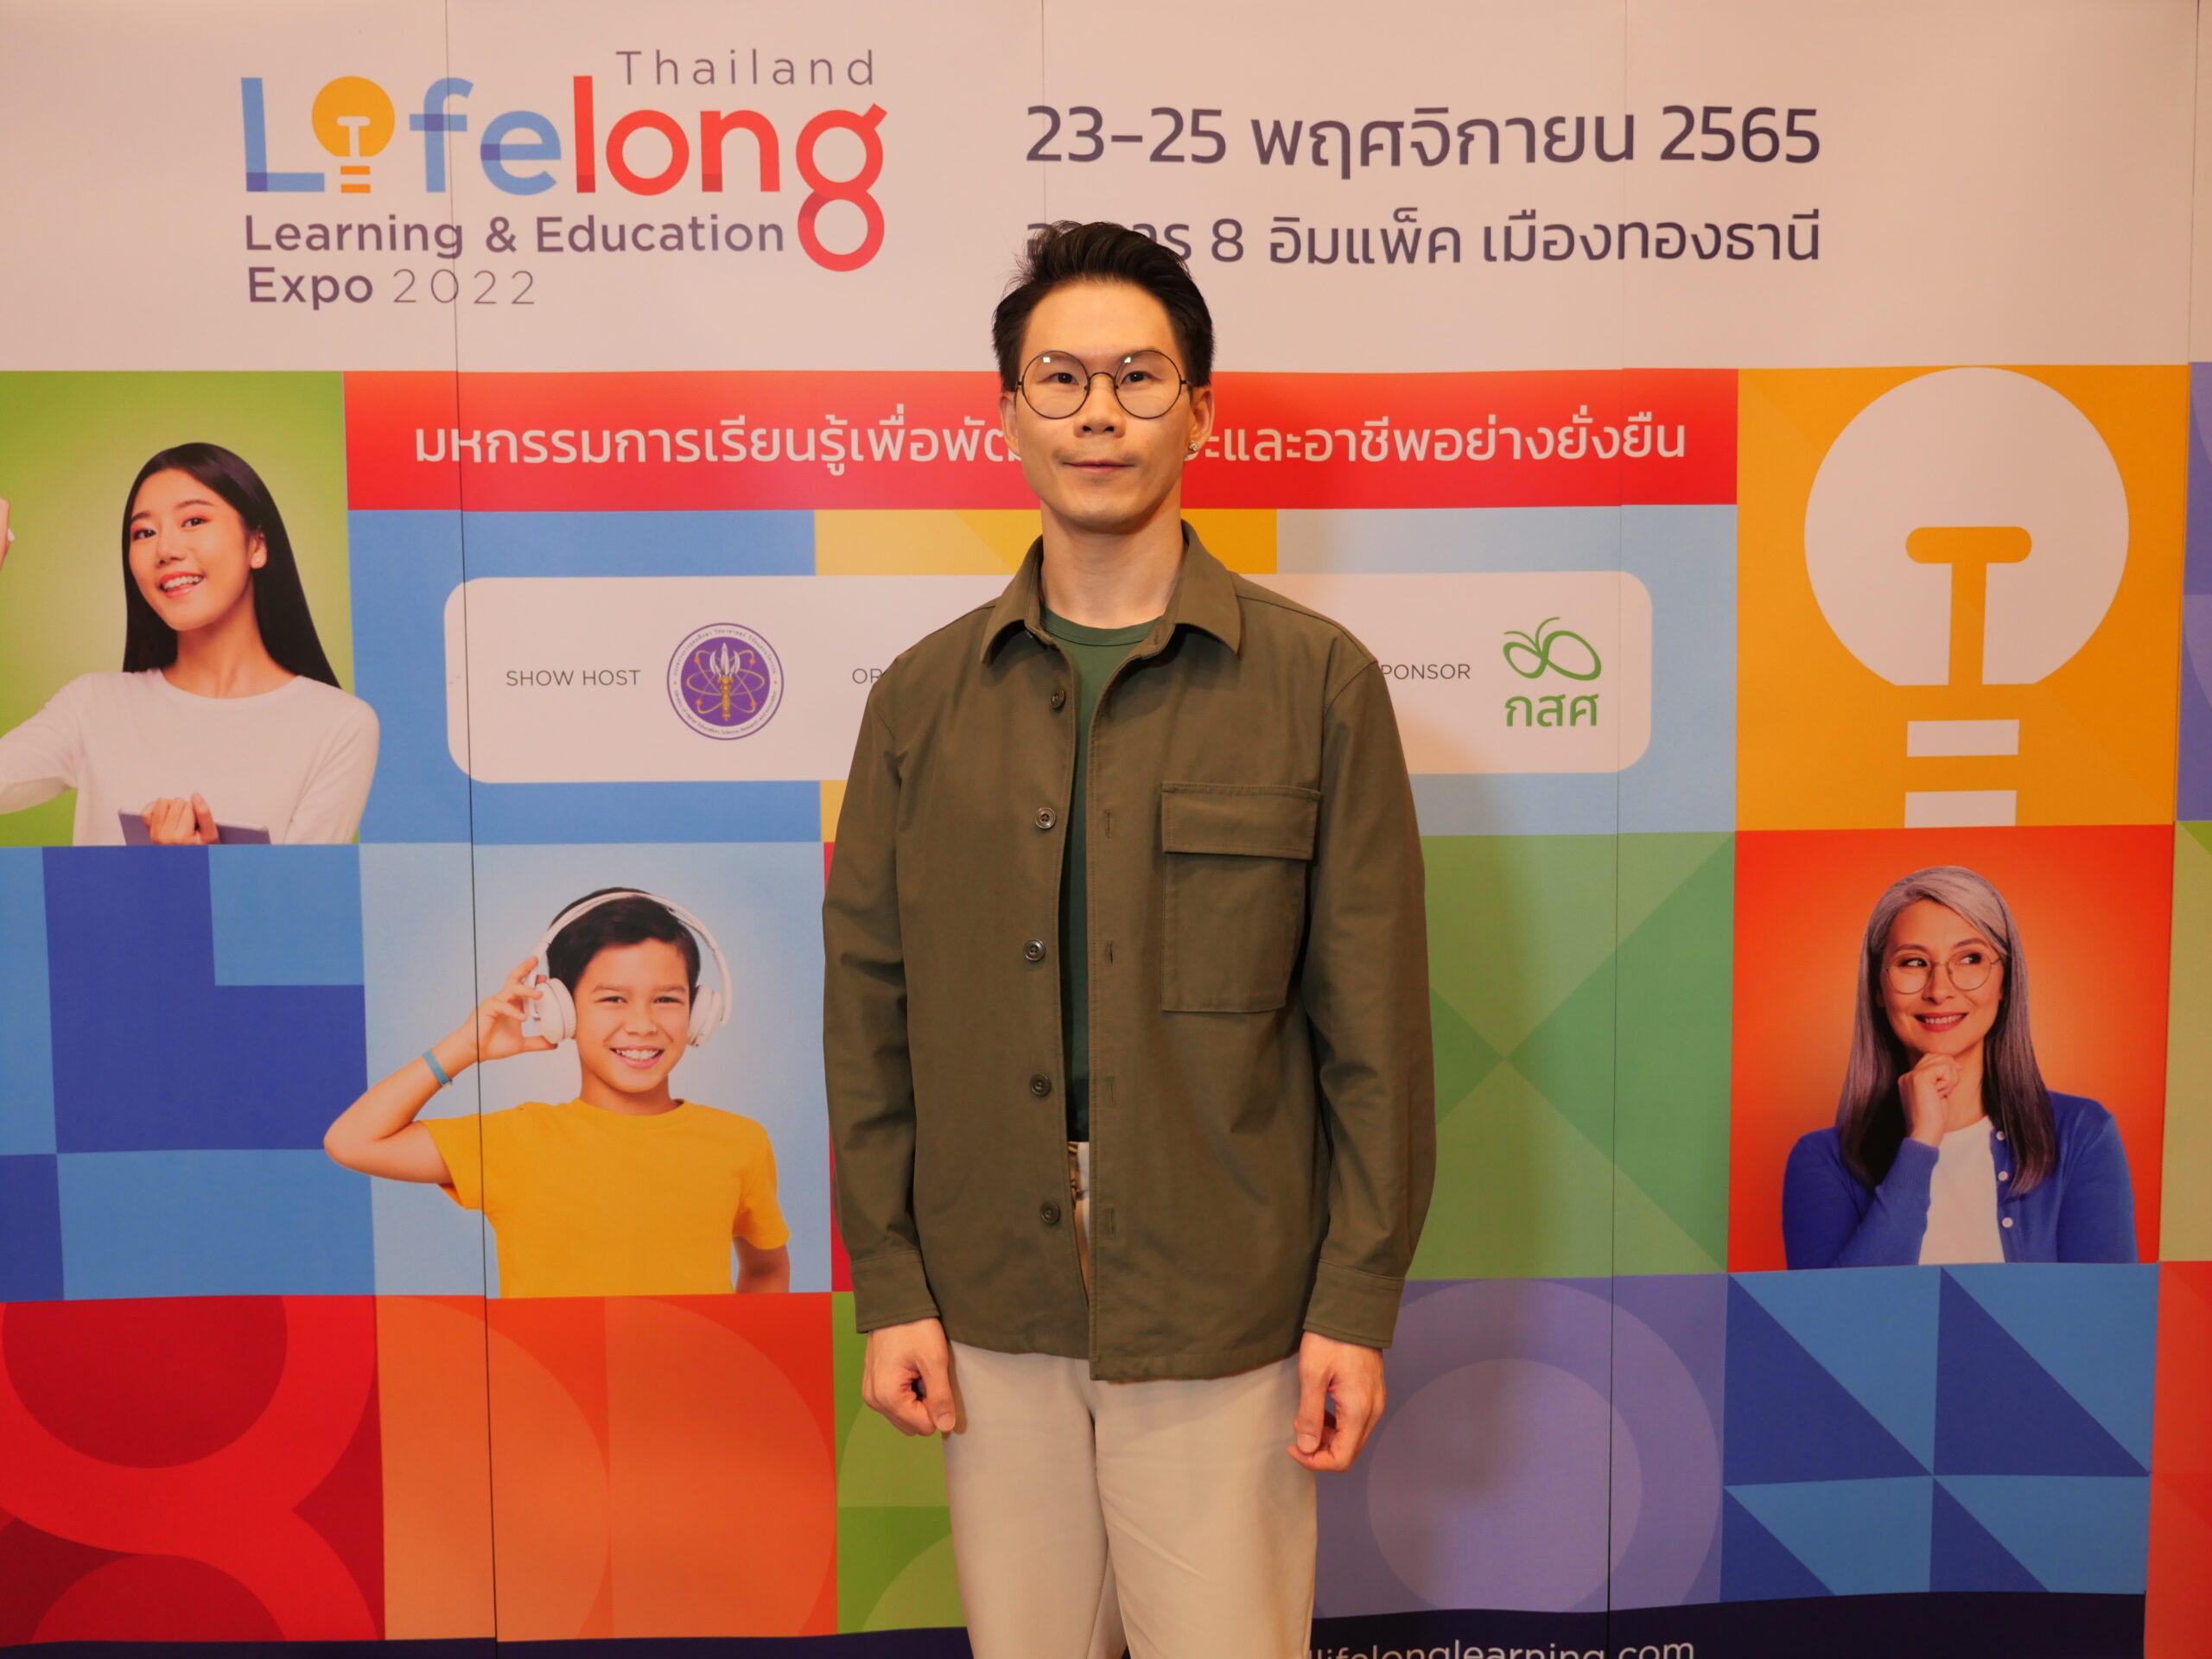 ชวนร่วมงาน Thailand Lifelong Learning & Education Expo 2022 : มหกรรมการเรียนรู้เพื่อพัฒนาทักษะและอาชีพอย่างยั่งยืน 